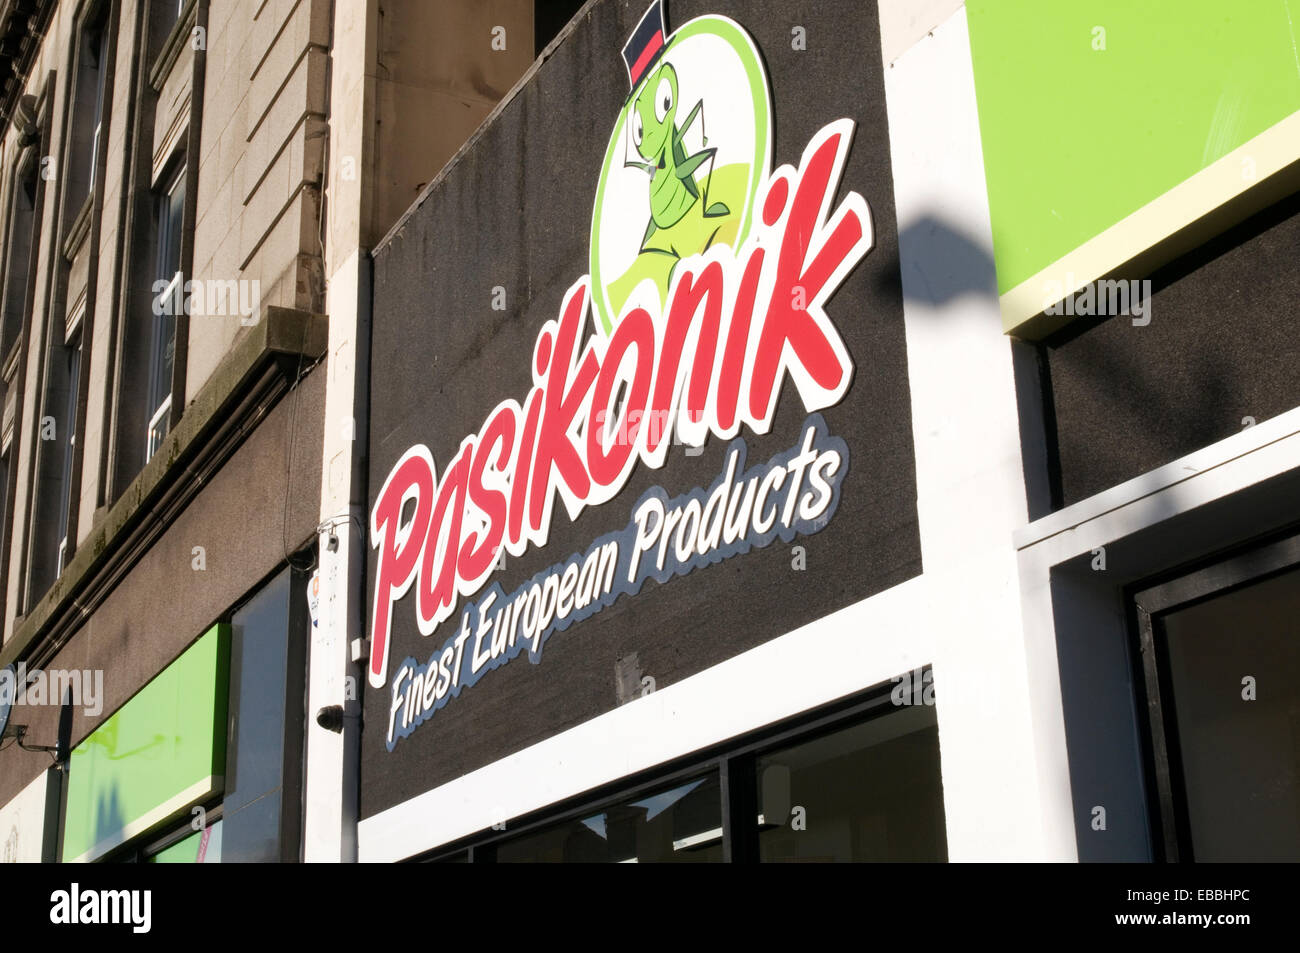 Pasiknik l'Europe de l'est les aliments de l'alimentation supermarchés Supermarché shop boutiques Estonien Lituanien polonais au Royaume-Uni les chaînes chaîne Banque D'Images